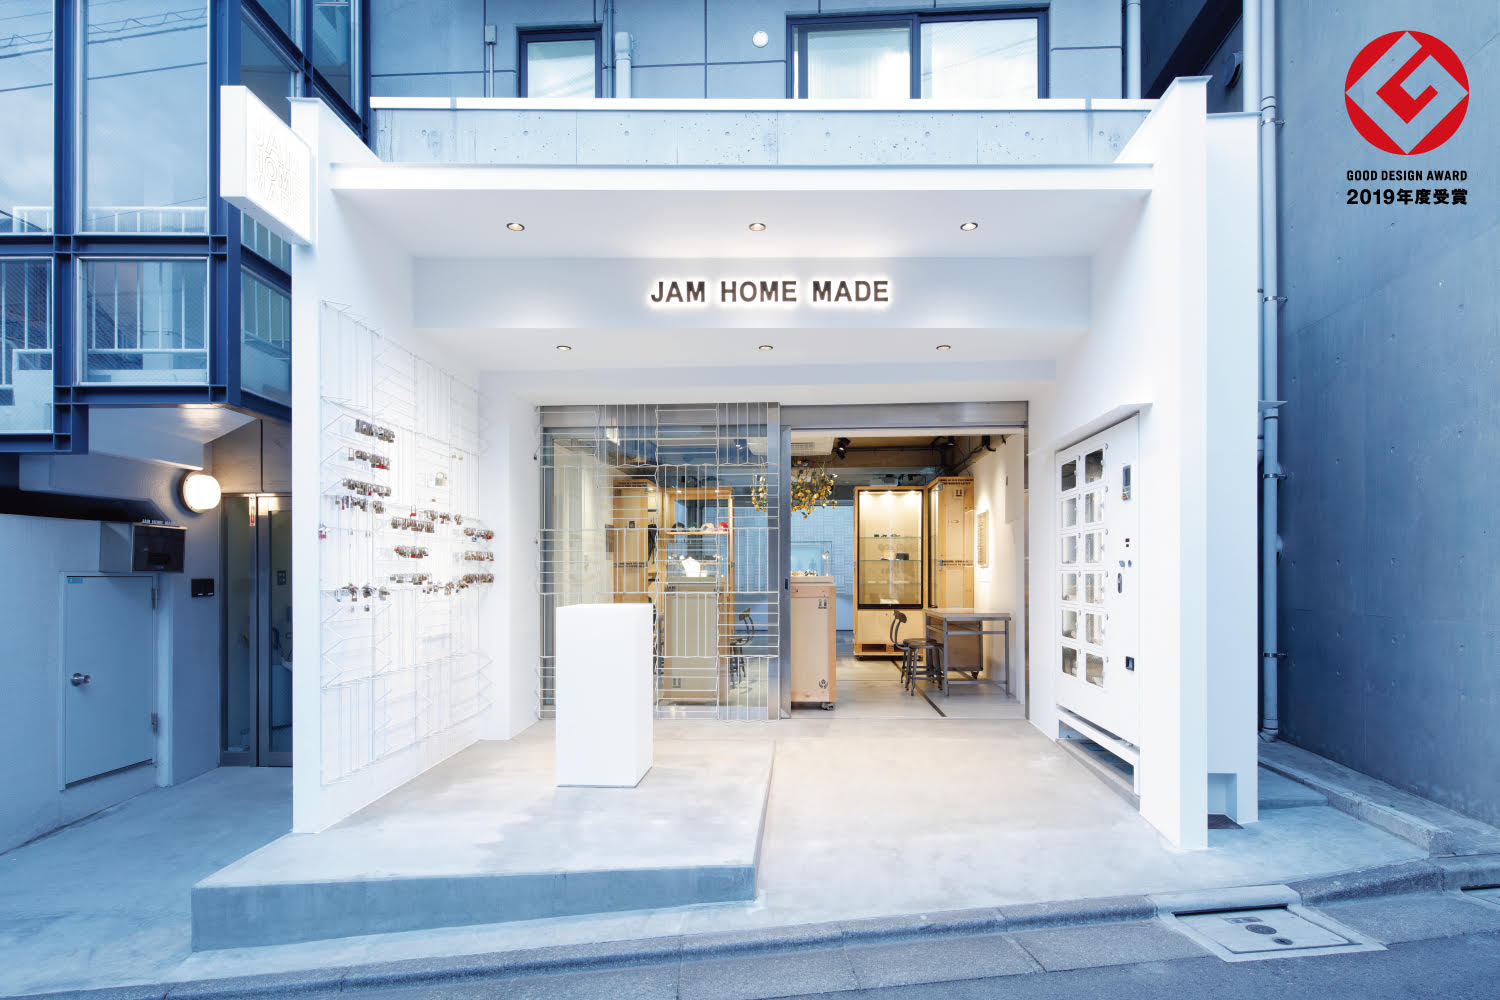 リアル と バーチャル が融合した複合現実店舗 Jam Home Made 東京店 が19年度グッドデザイン賞を受賞 株式会社 Jam Home Madeのプレスリリース